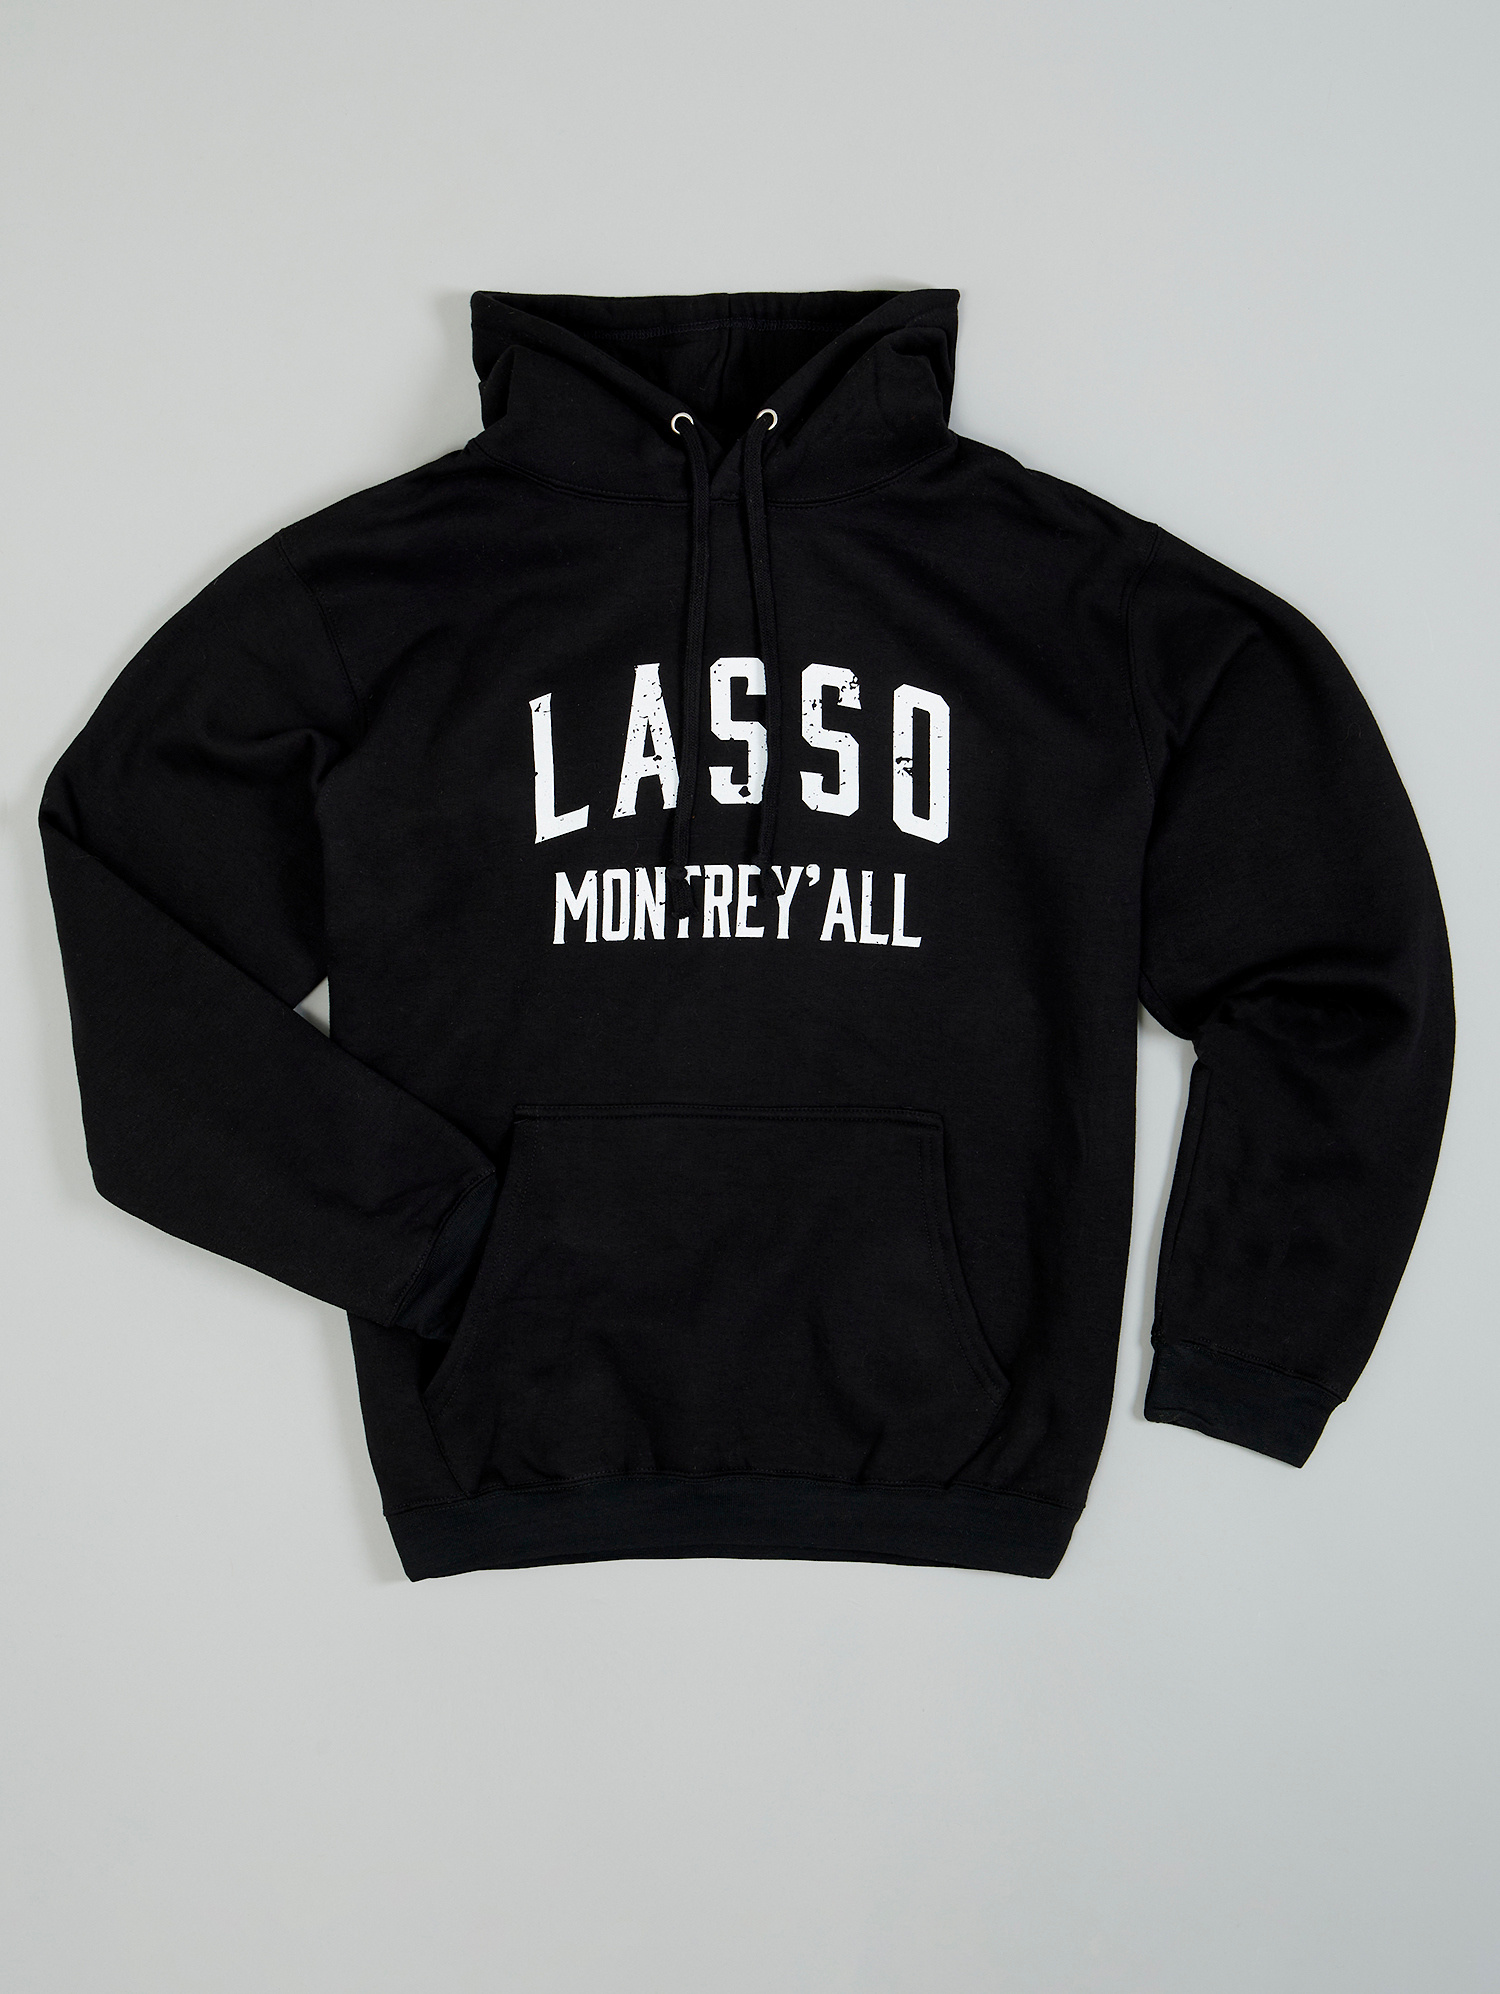 LASSO Montrey'all Distressed Logo Hoodie - LASSO Montréal Festival